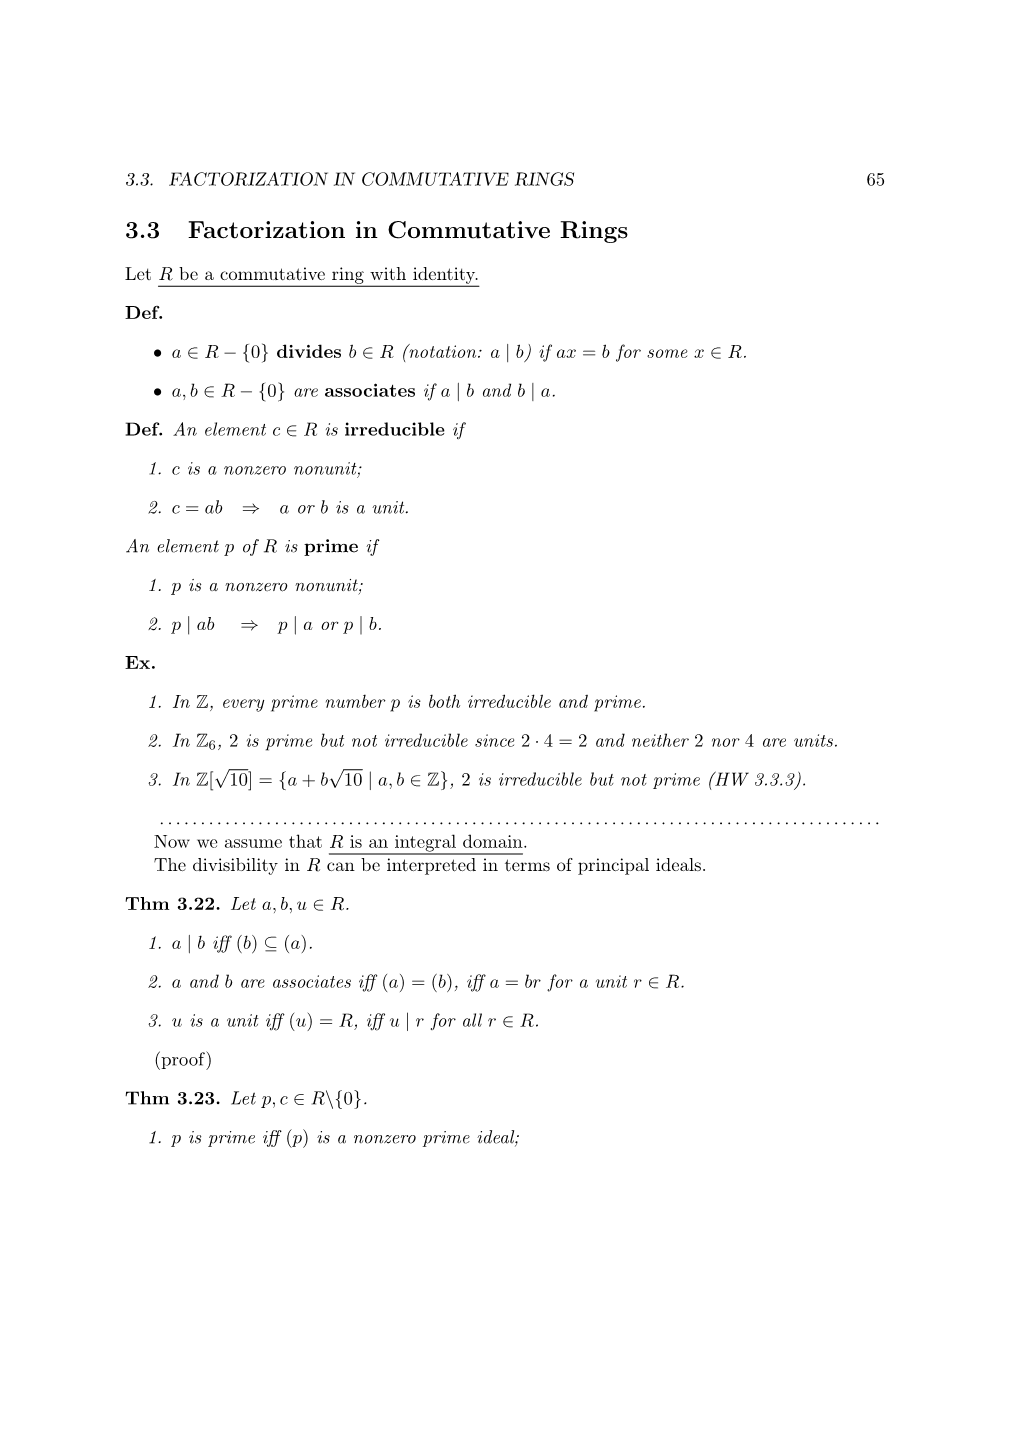 3.3 Factorization in Commutative Rings